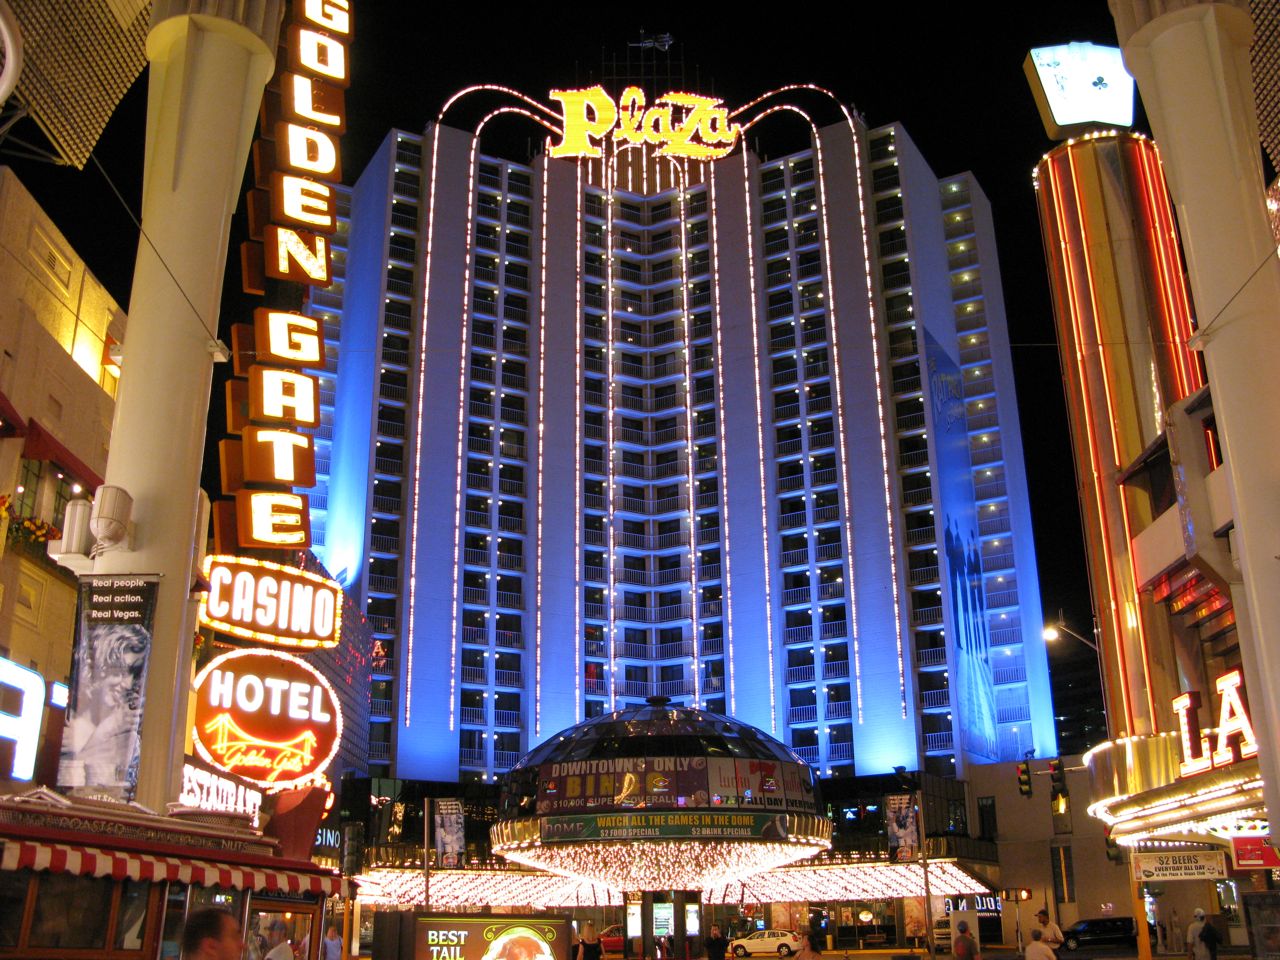 Plaza Las Vegas